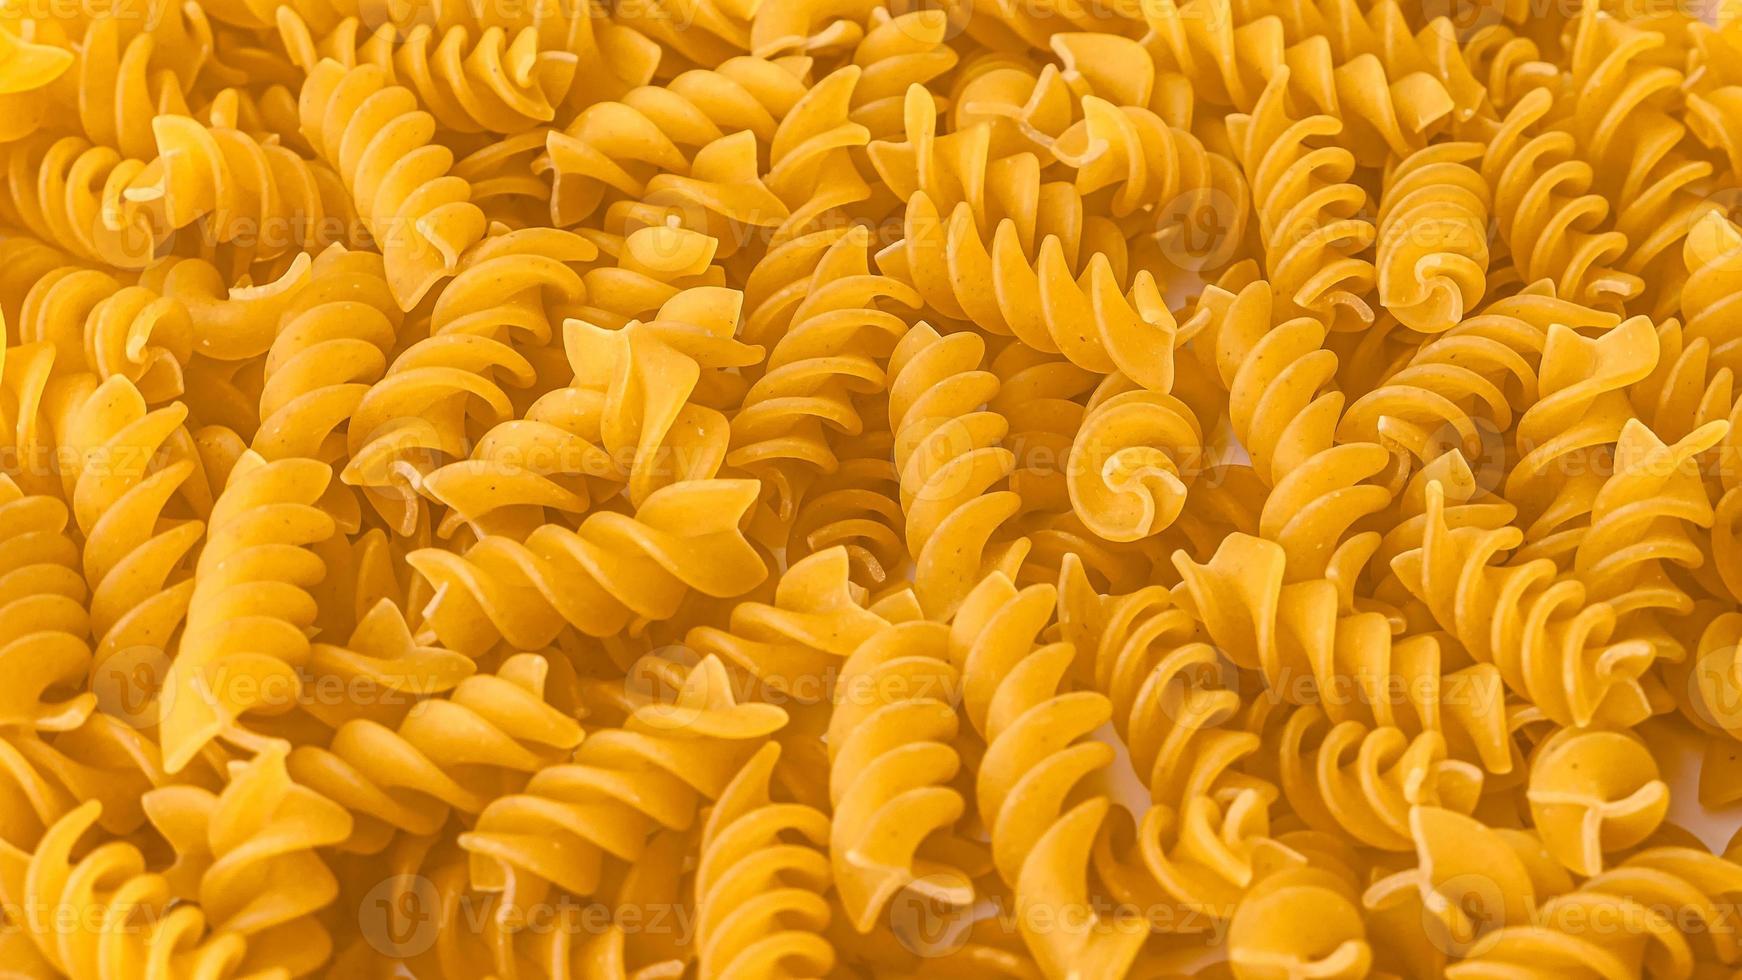 torr italiensk pasta bakgrund friska mat Foto